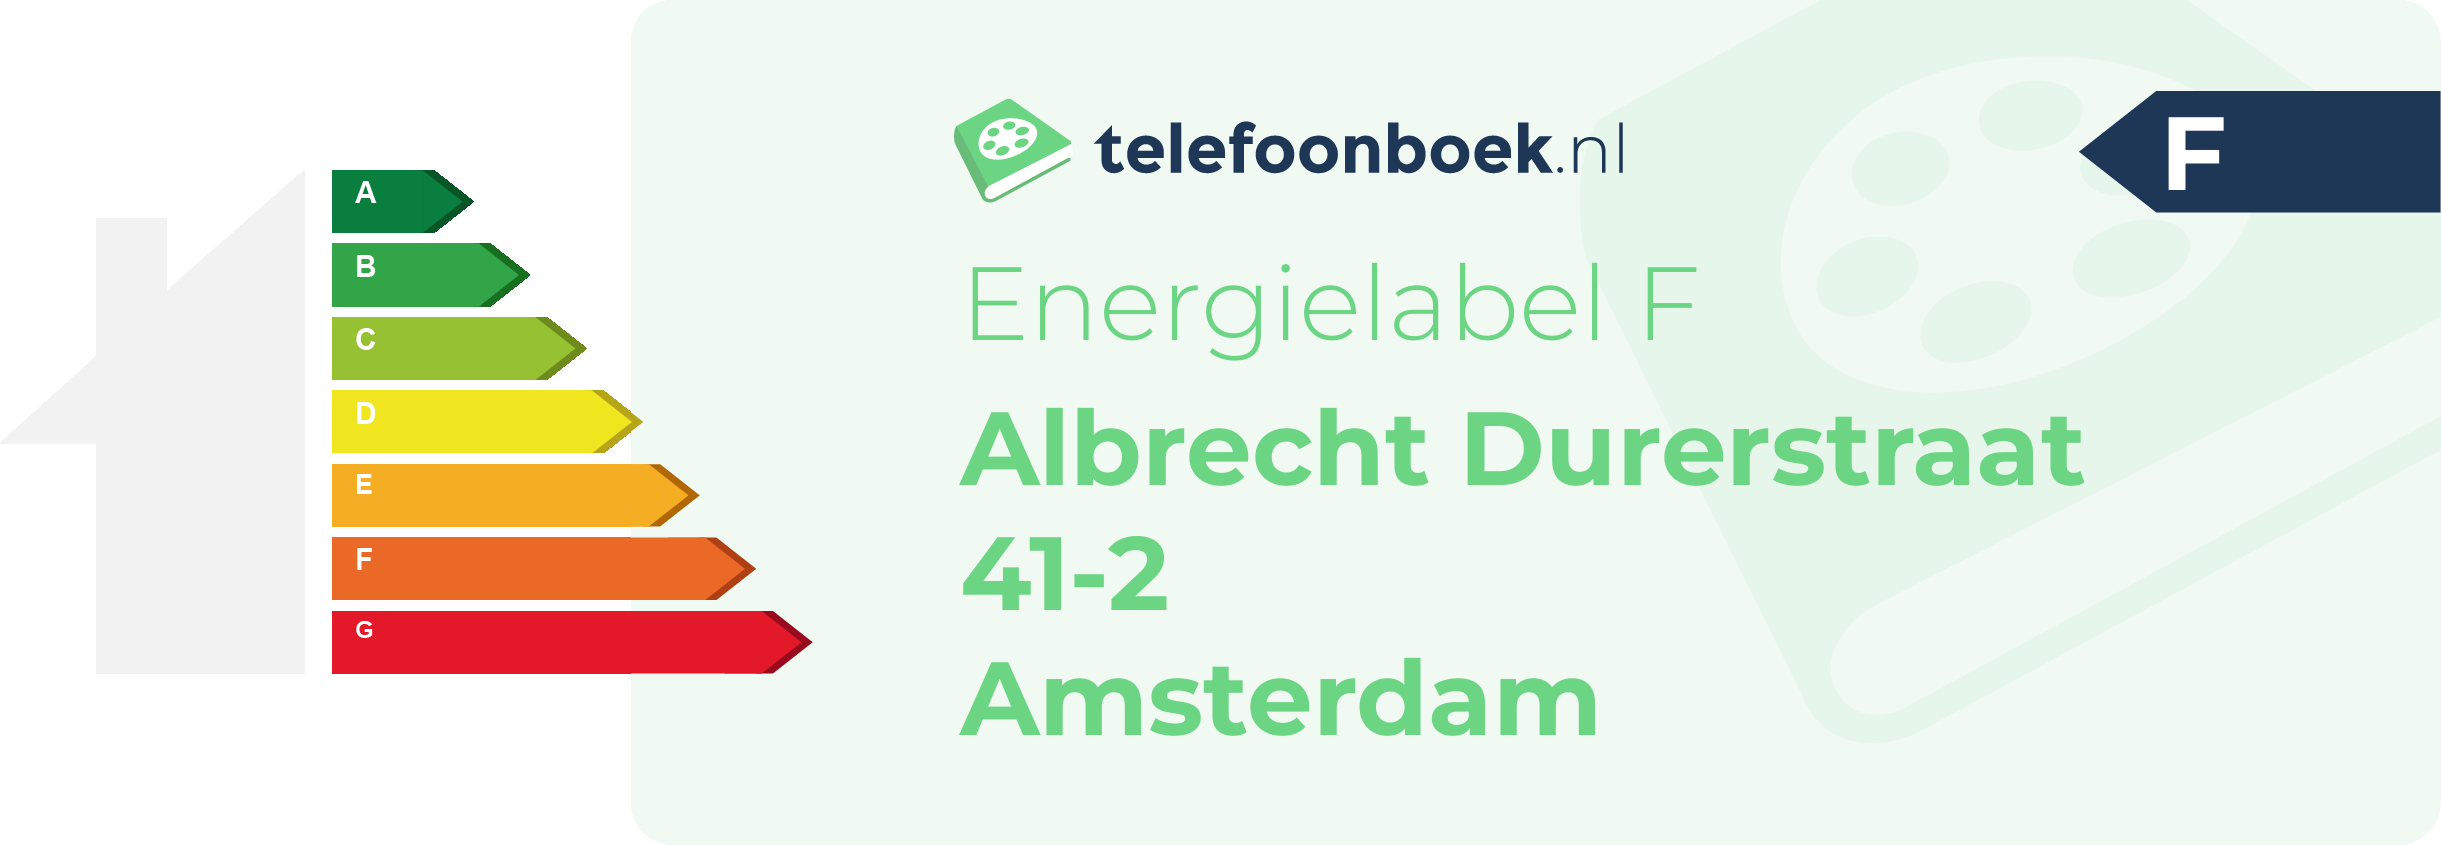 Energielabel Albrecht Durerstraat 41-2 Amsterdam